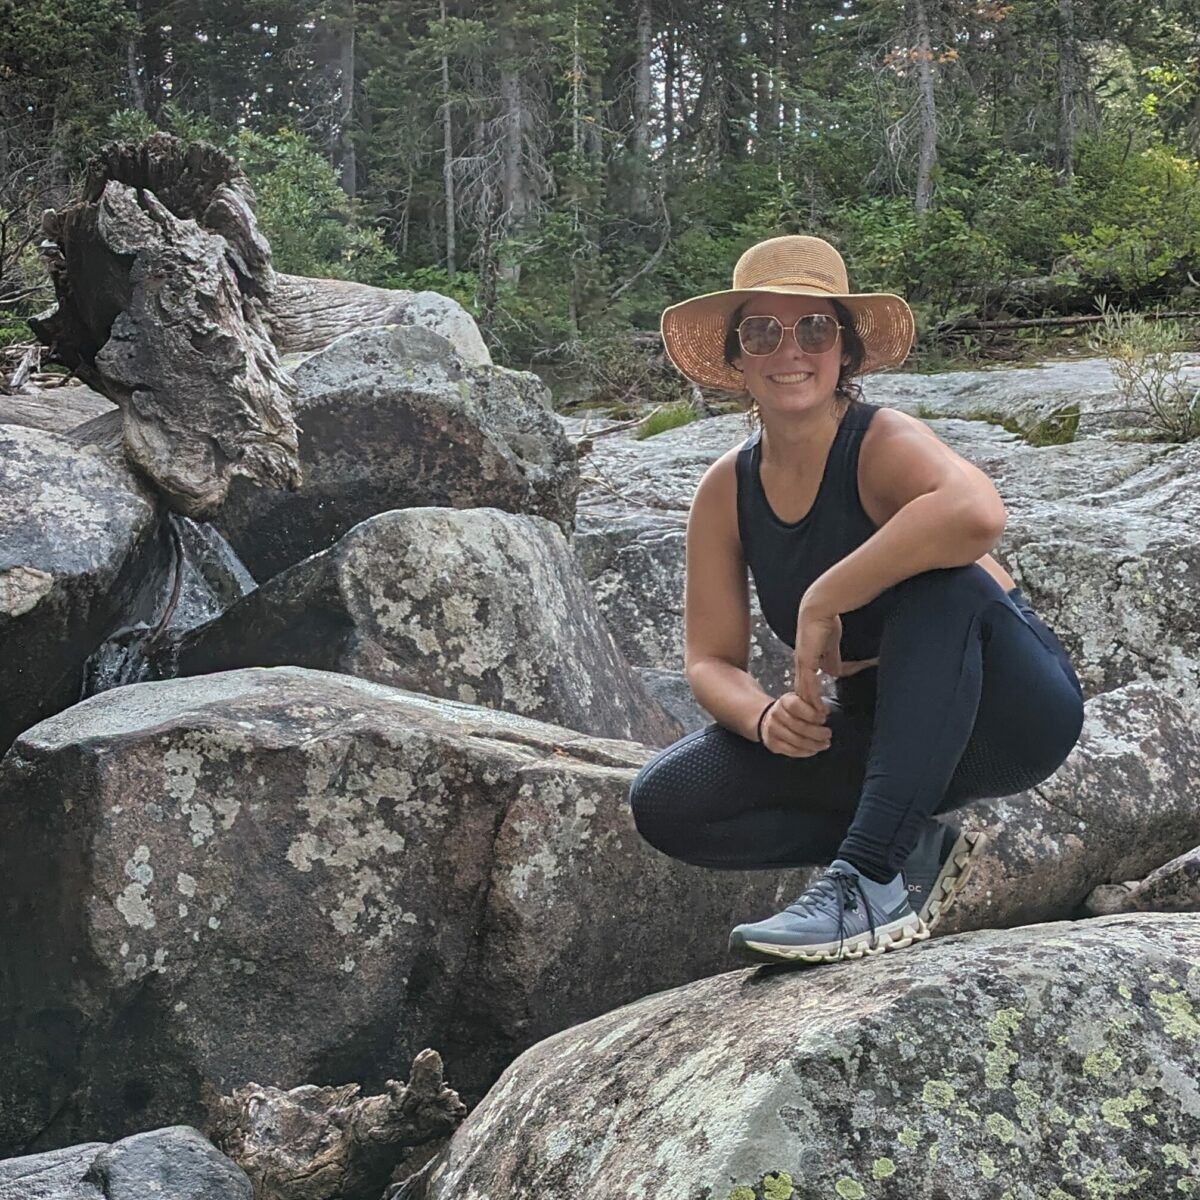 Jodelle posing in a sun hat on boulders.